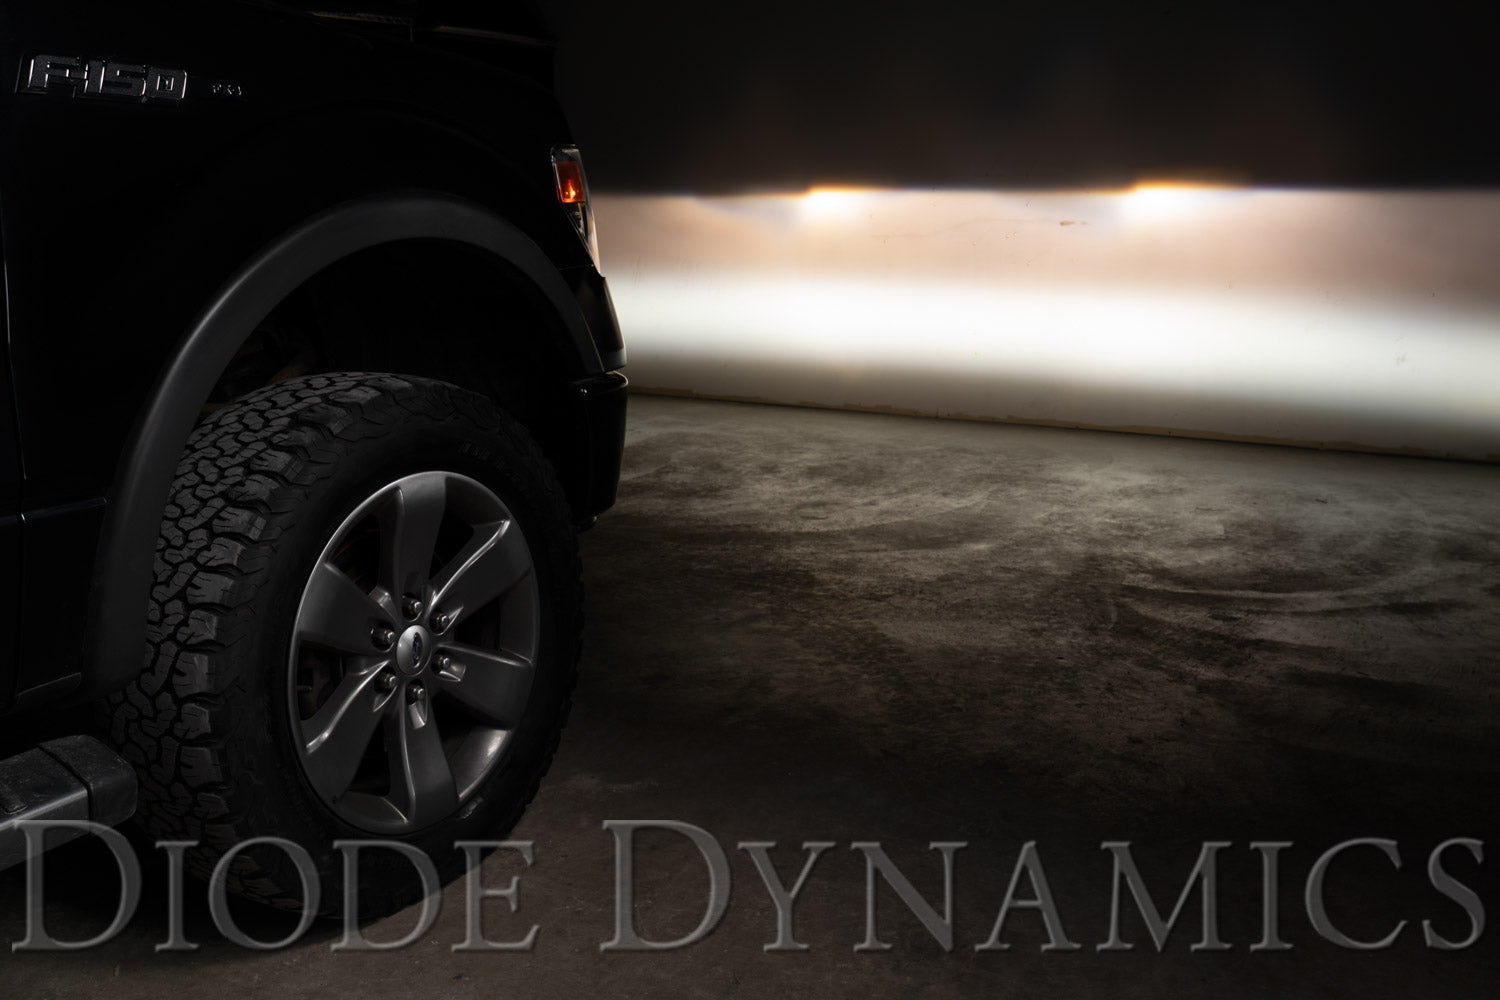 SS3 LED Fog Light Kit for 2011-2014 Ford F150 White SAE/DOT Driving Pro Diode Dynamics